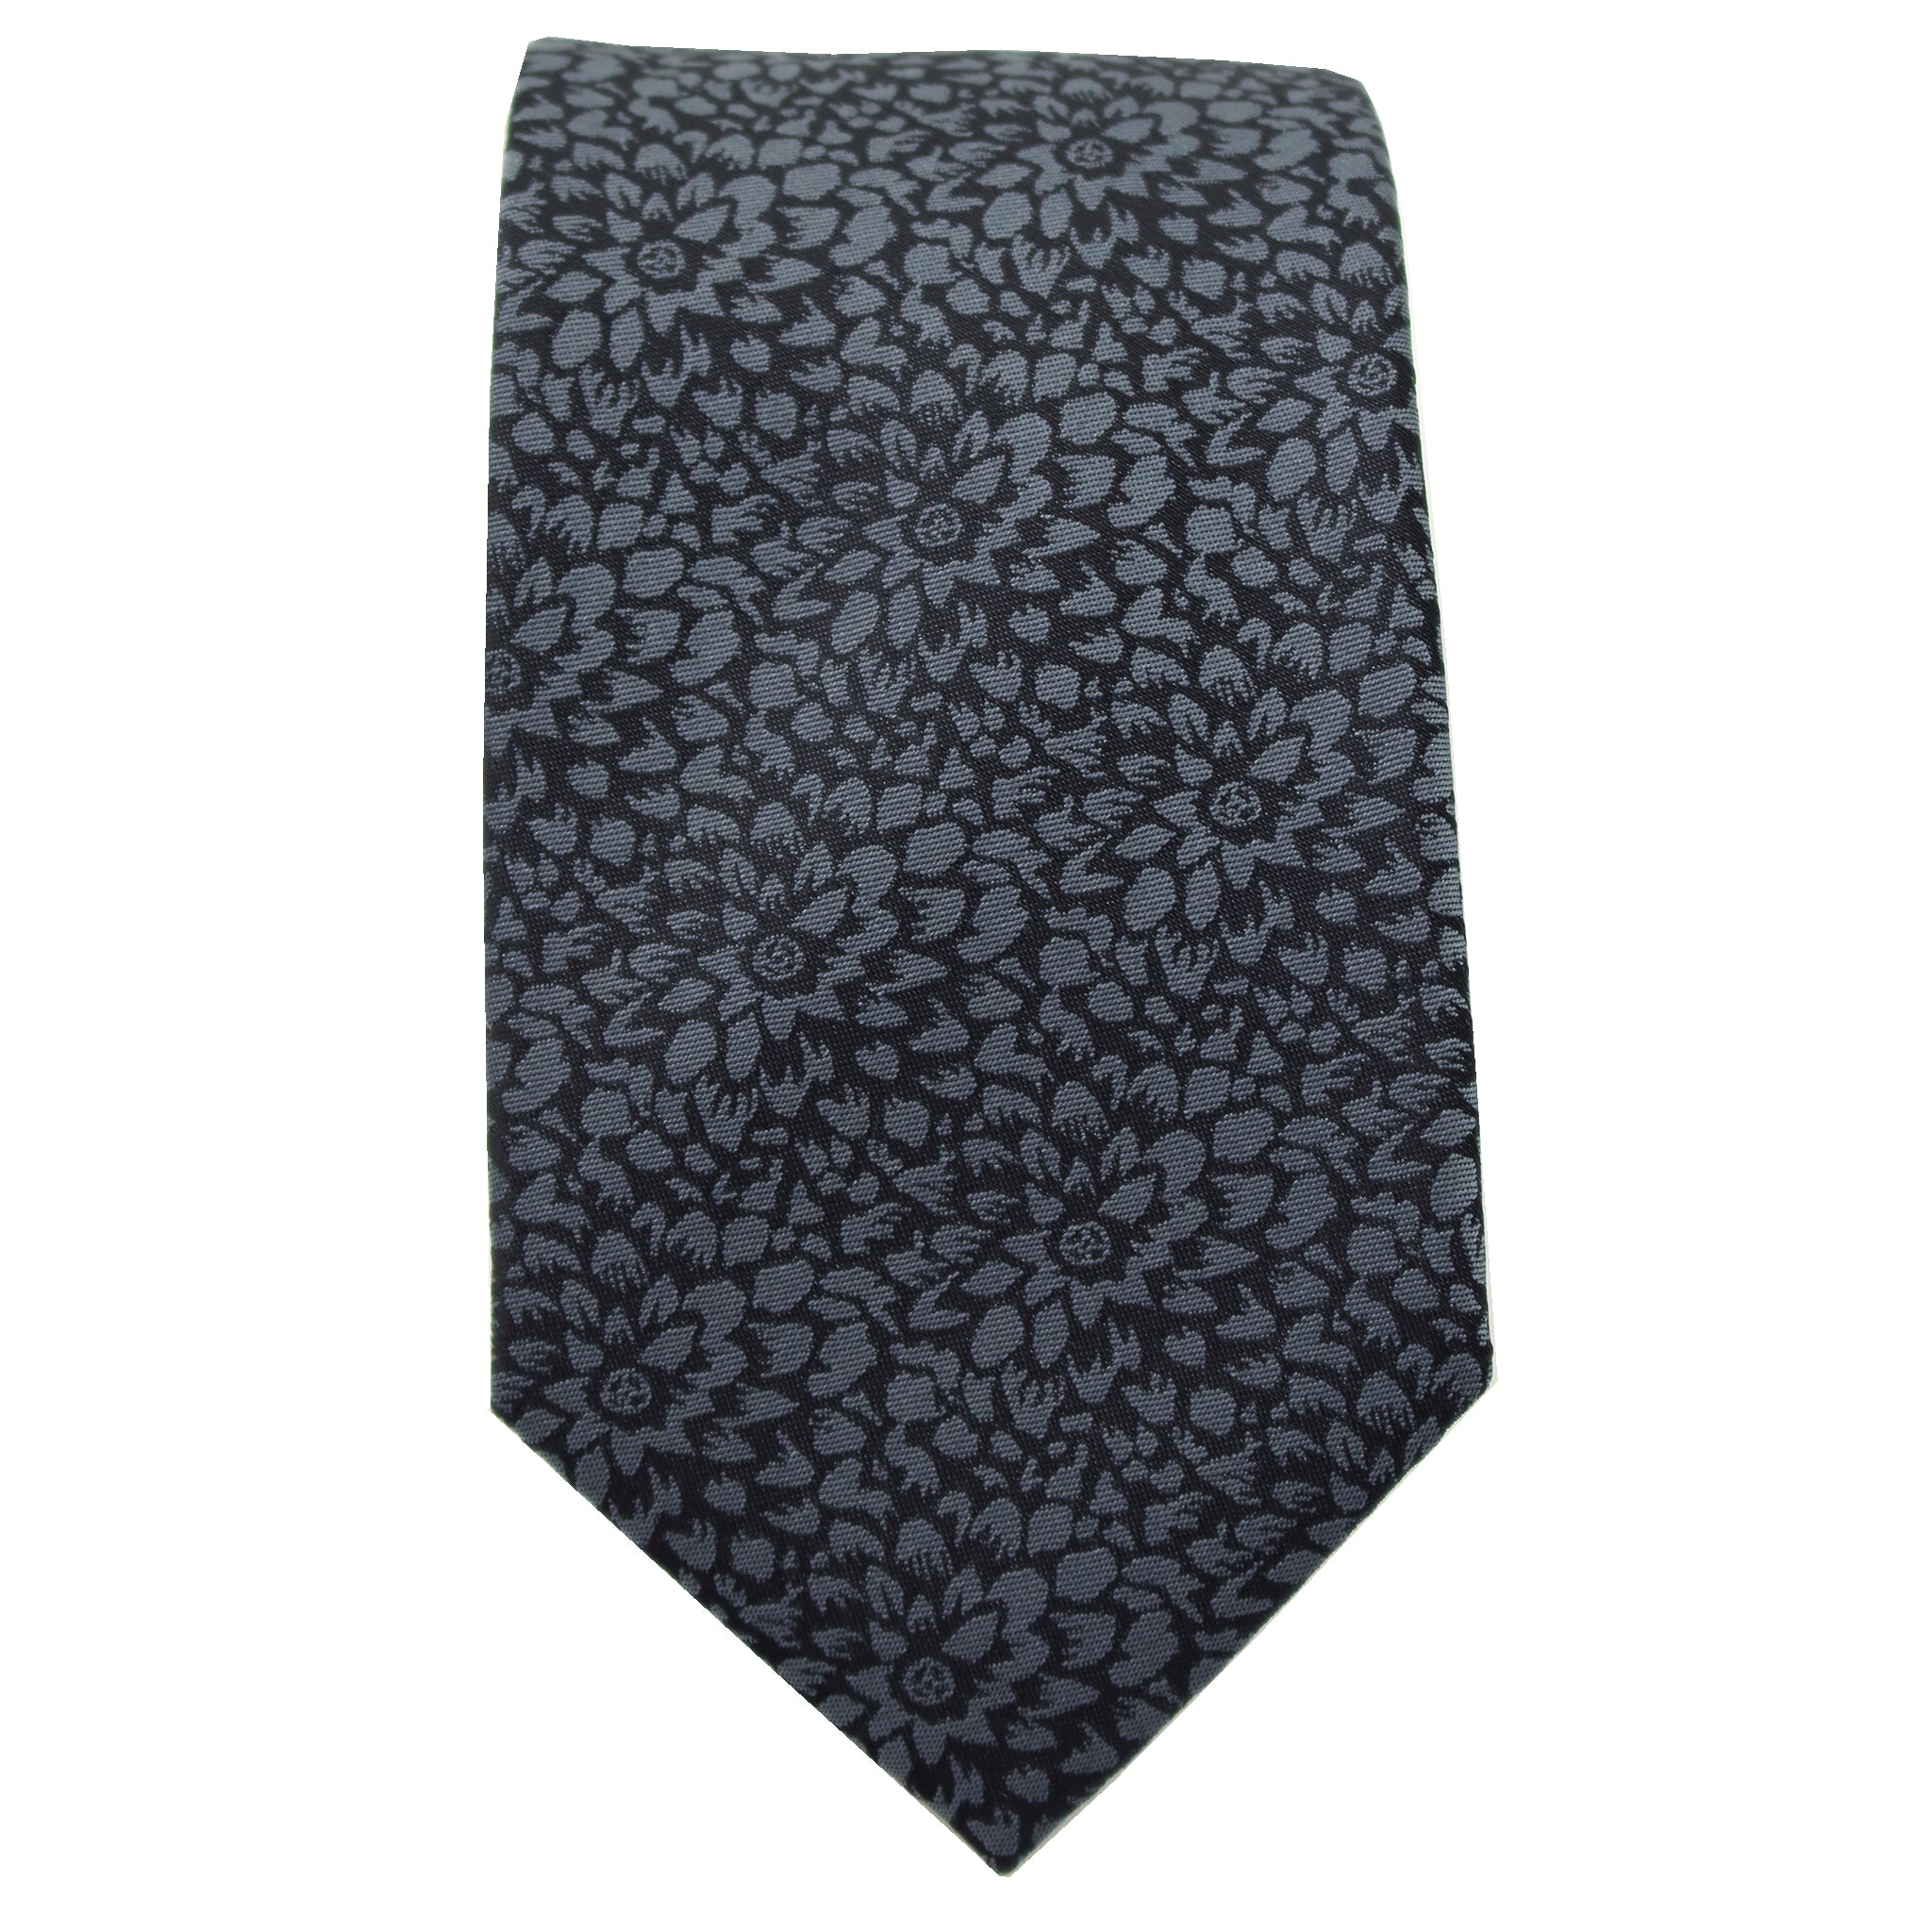 Black & Silver Floral Tie